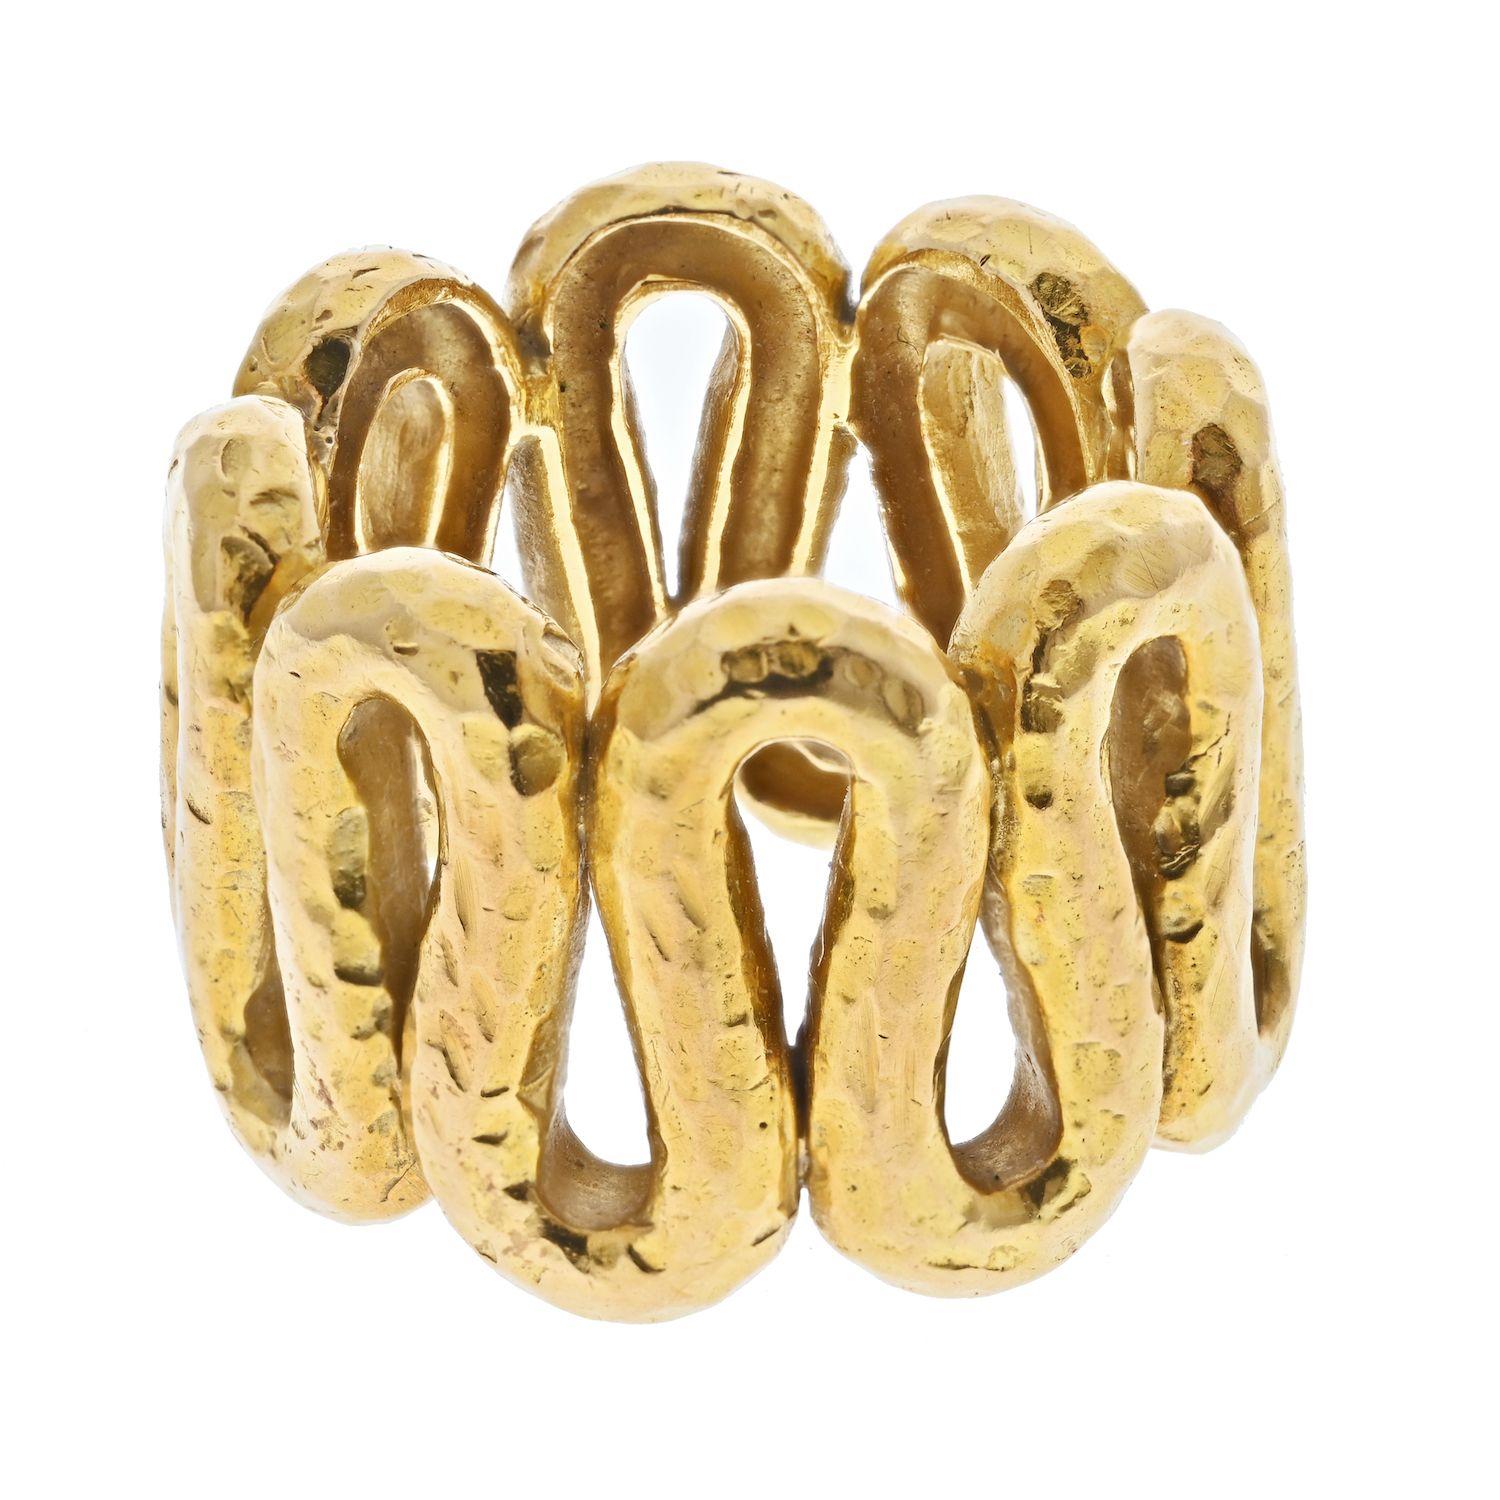 Dies ist ein cooler, modern aussehender Ring von David Webb aus 18 Karat Gelbgold in Form eines gehämmerten Wellenrings. Dieser Ring hat ein klassisches Webb-Finish und ist von hoher handwerklicher Qualität.  